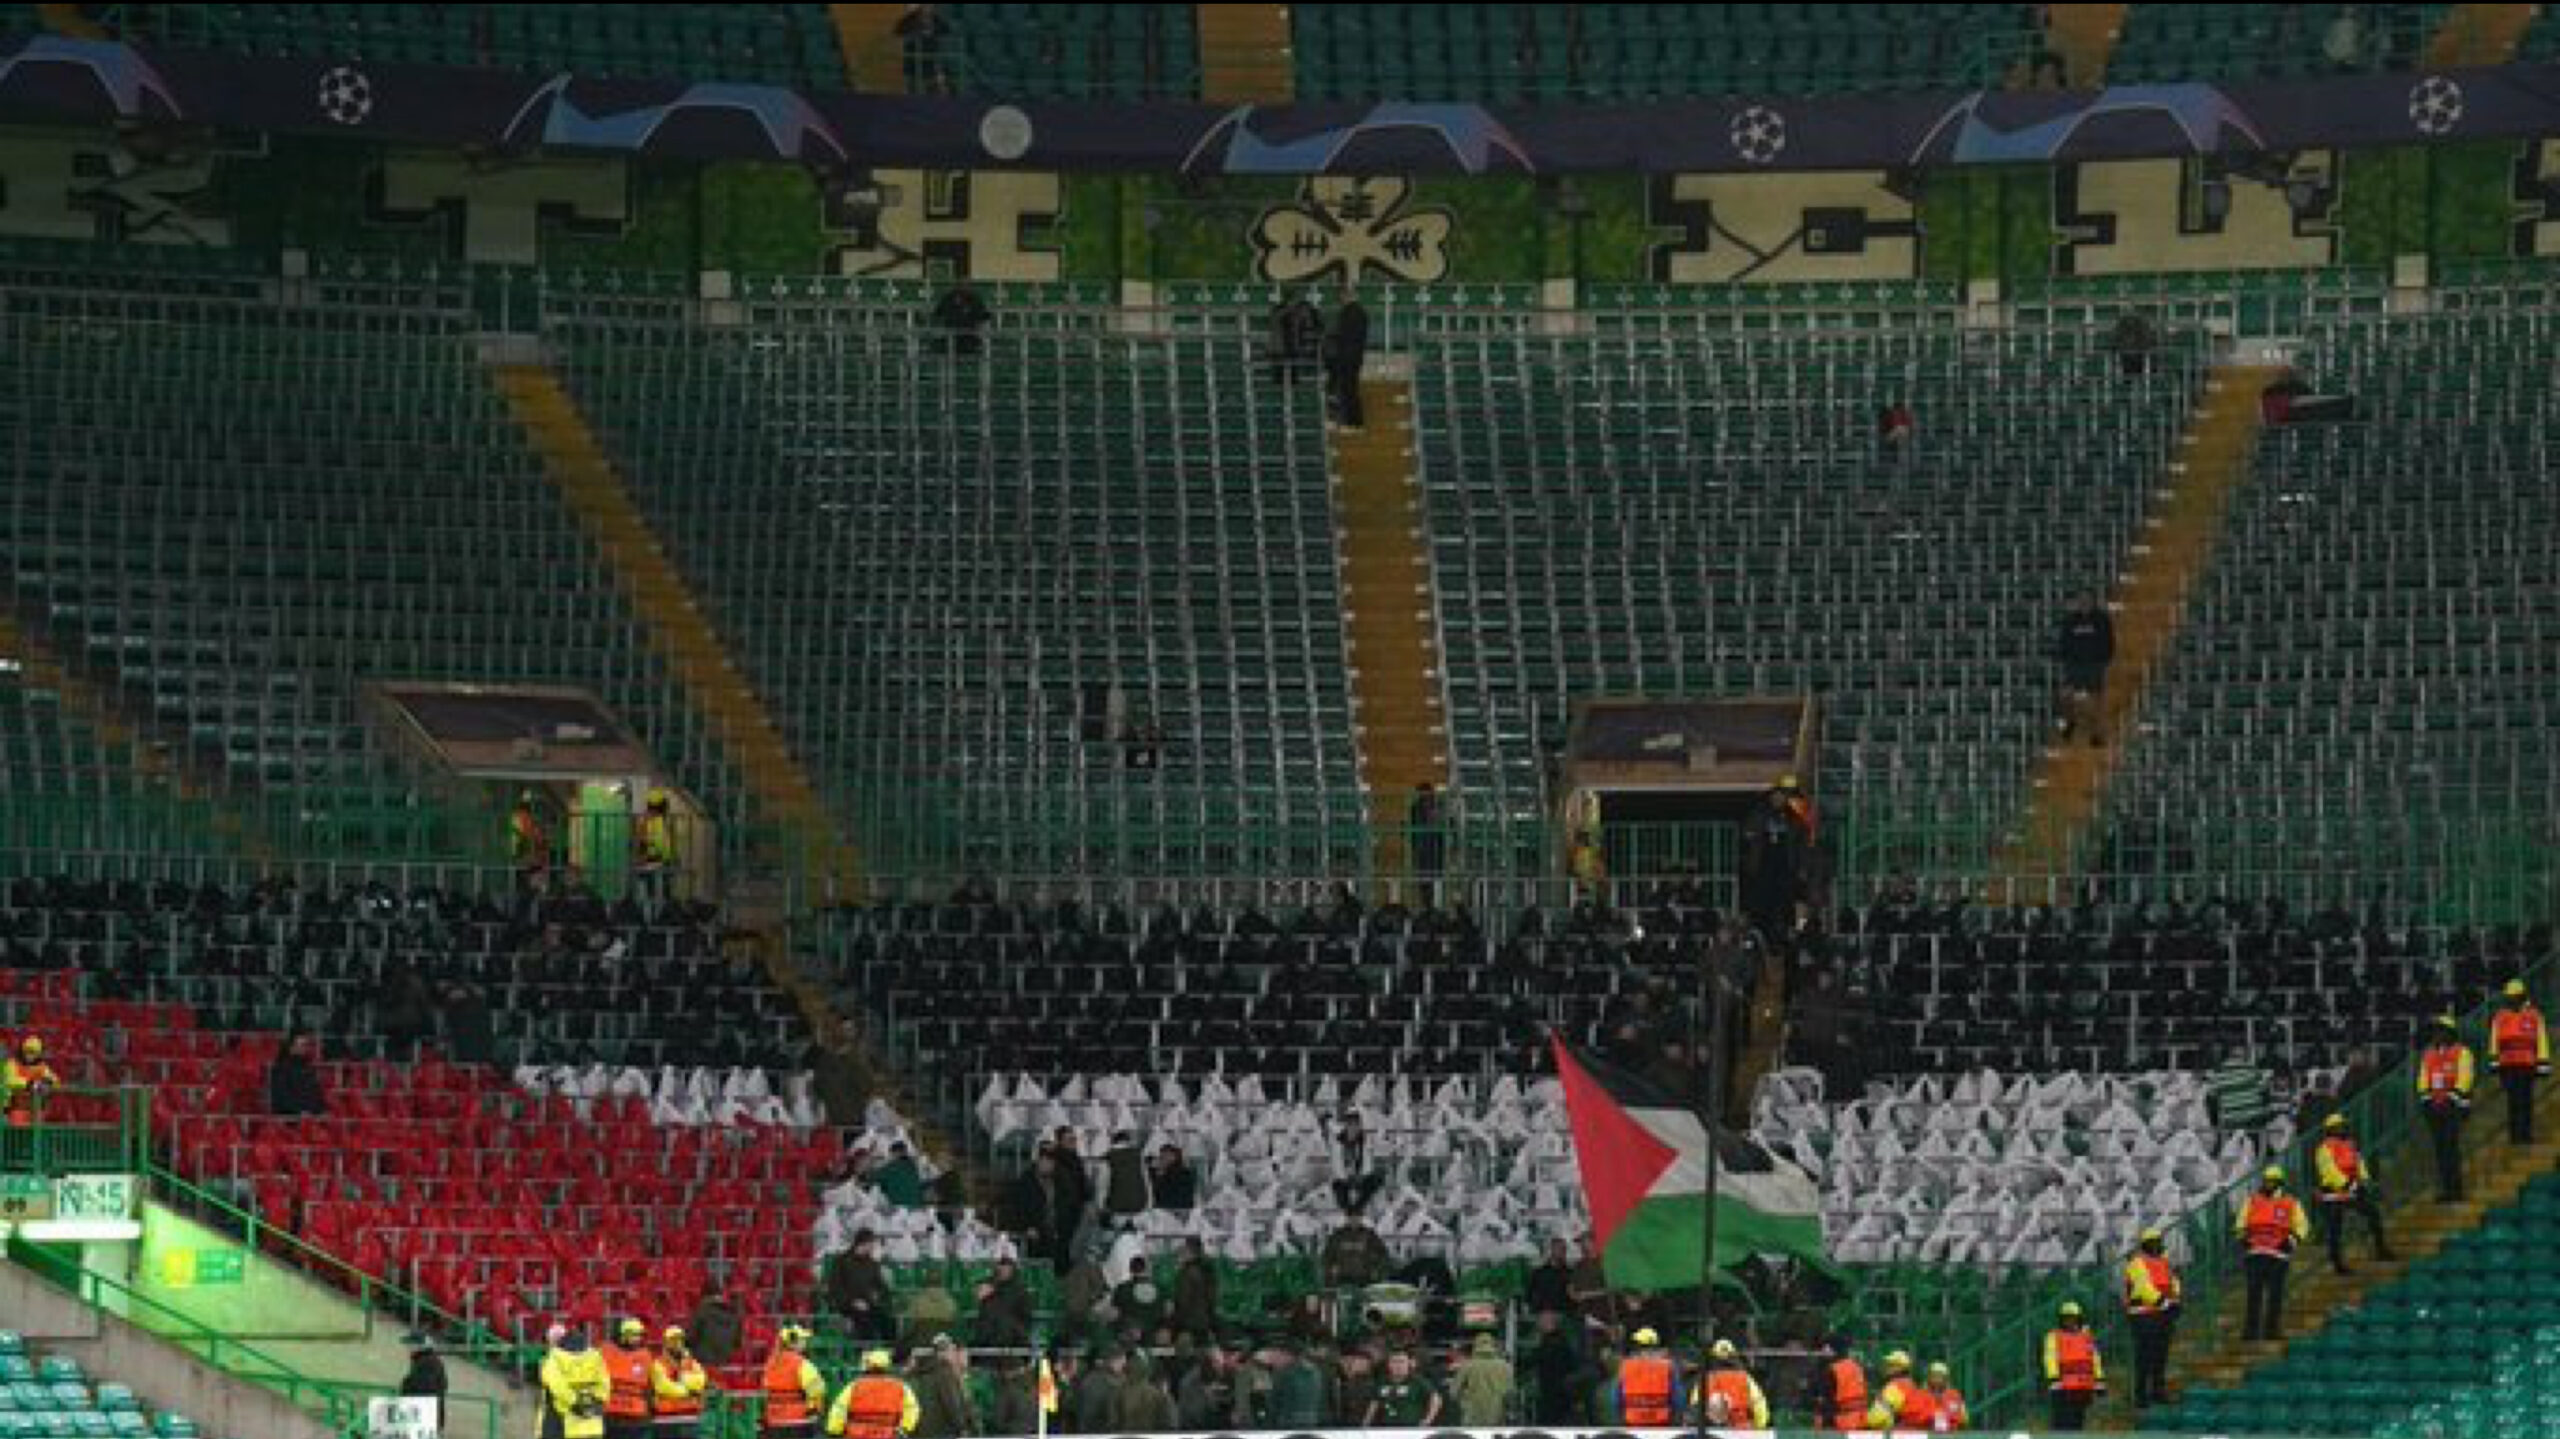 غرامة على نادي أوربي بسبب تلويح جماهيره بأعلام فلسطين